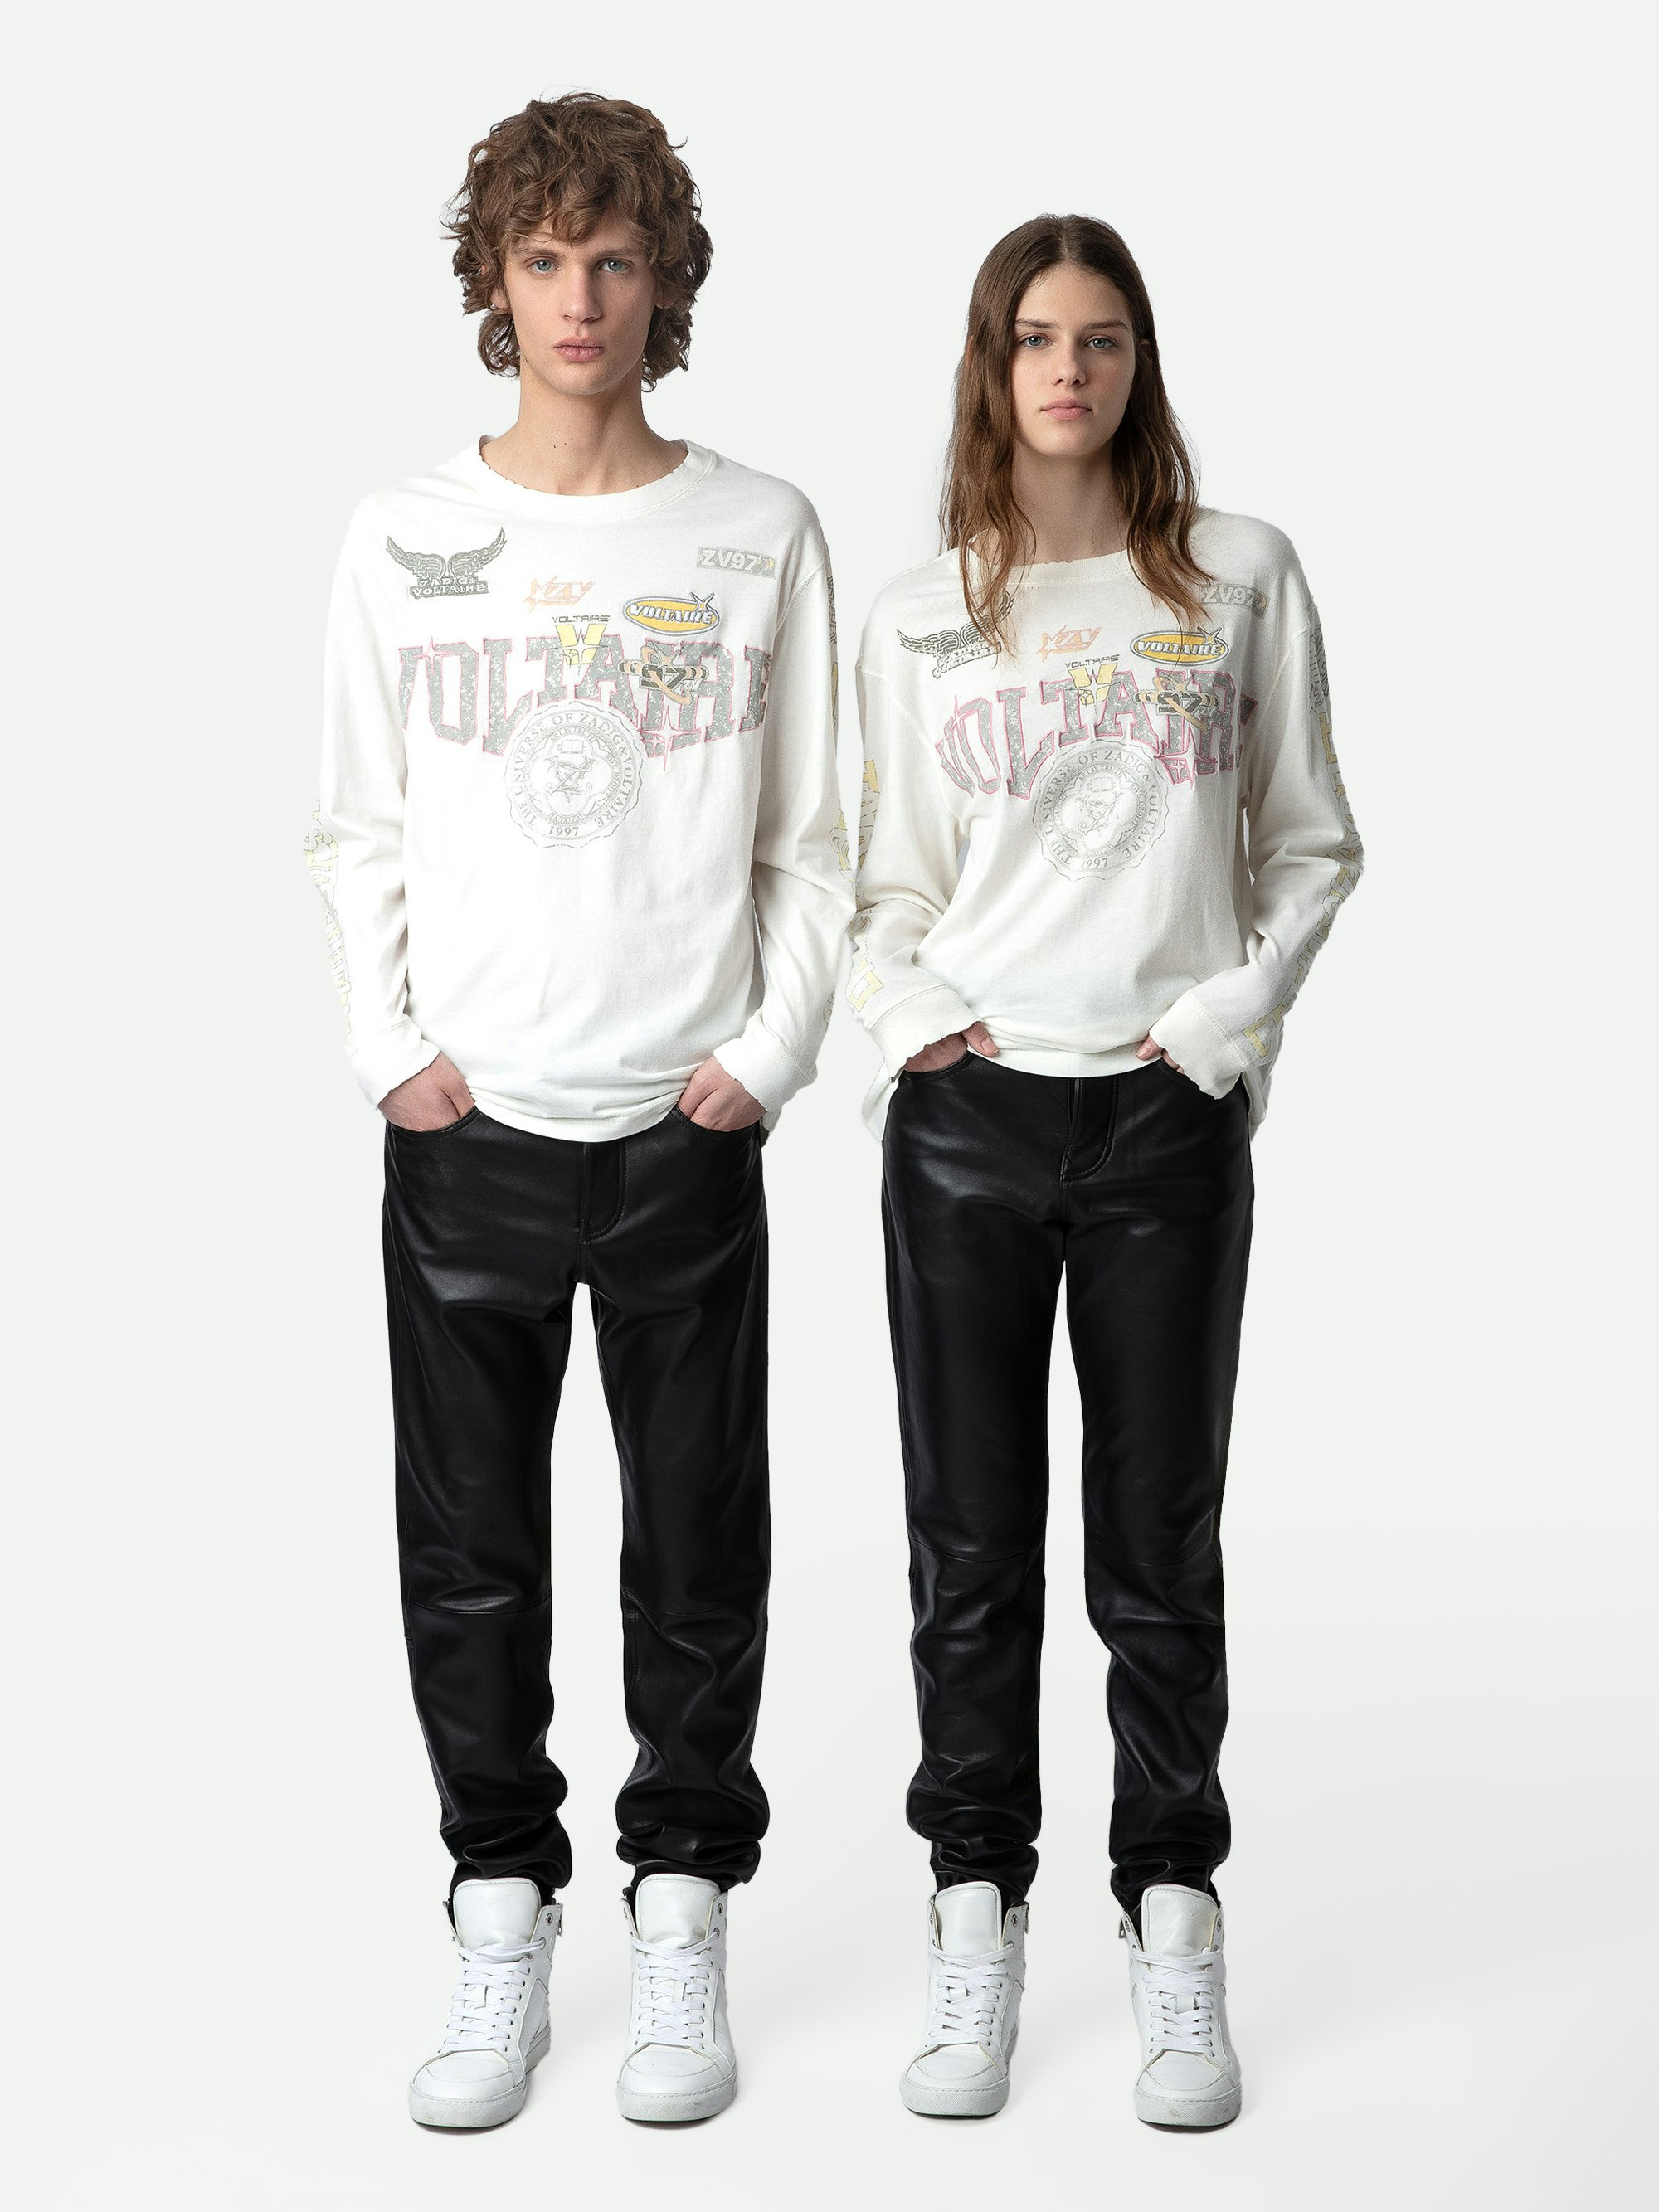 Camiseta Noane Voltaire - Camiseta de inspiración motera de algodón en tono crudo con mangas largas, insignias decorativas Voltaire y codos acolchados.